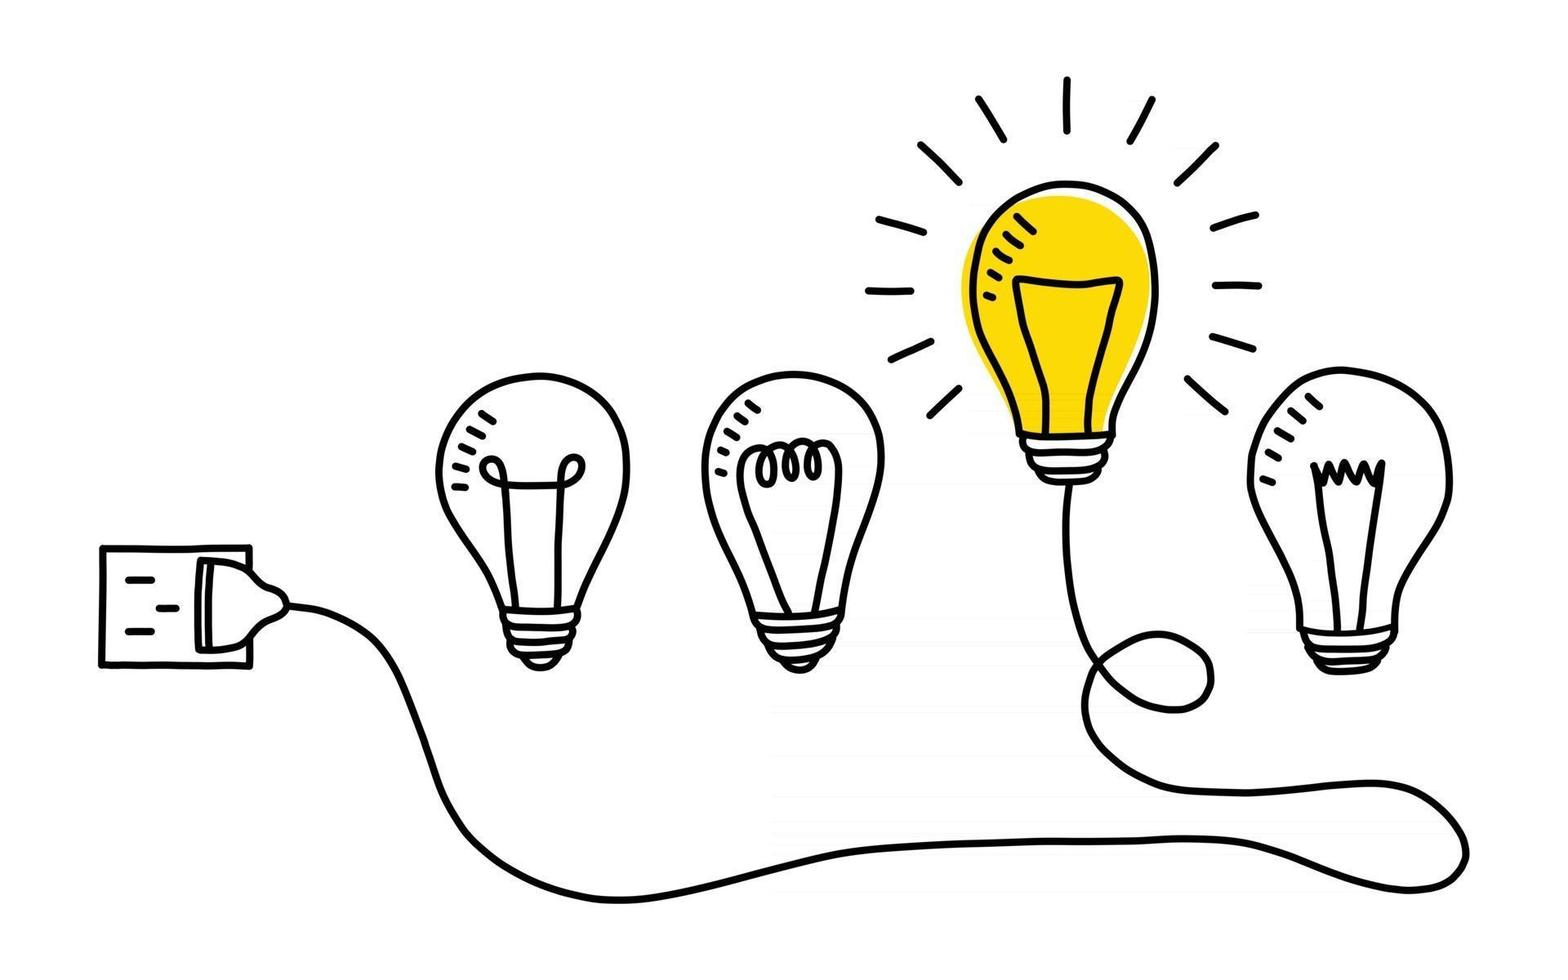 Hand drawn light bulbs creative idea vector